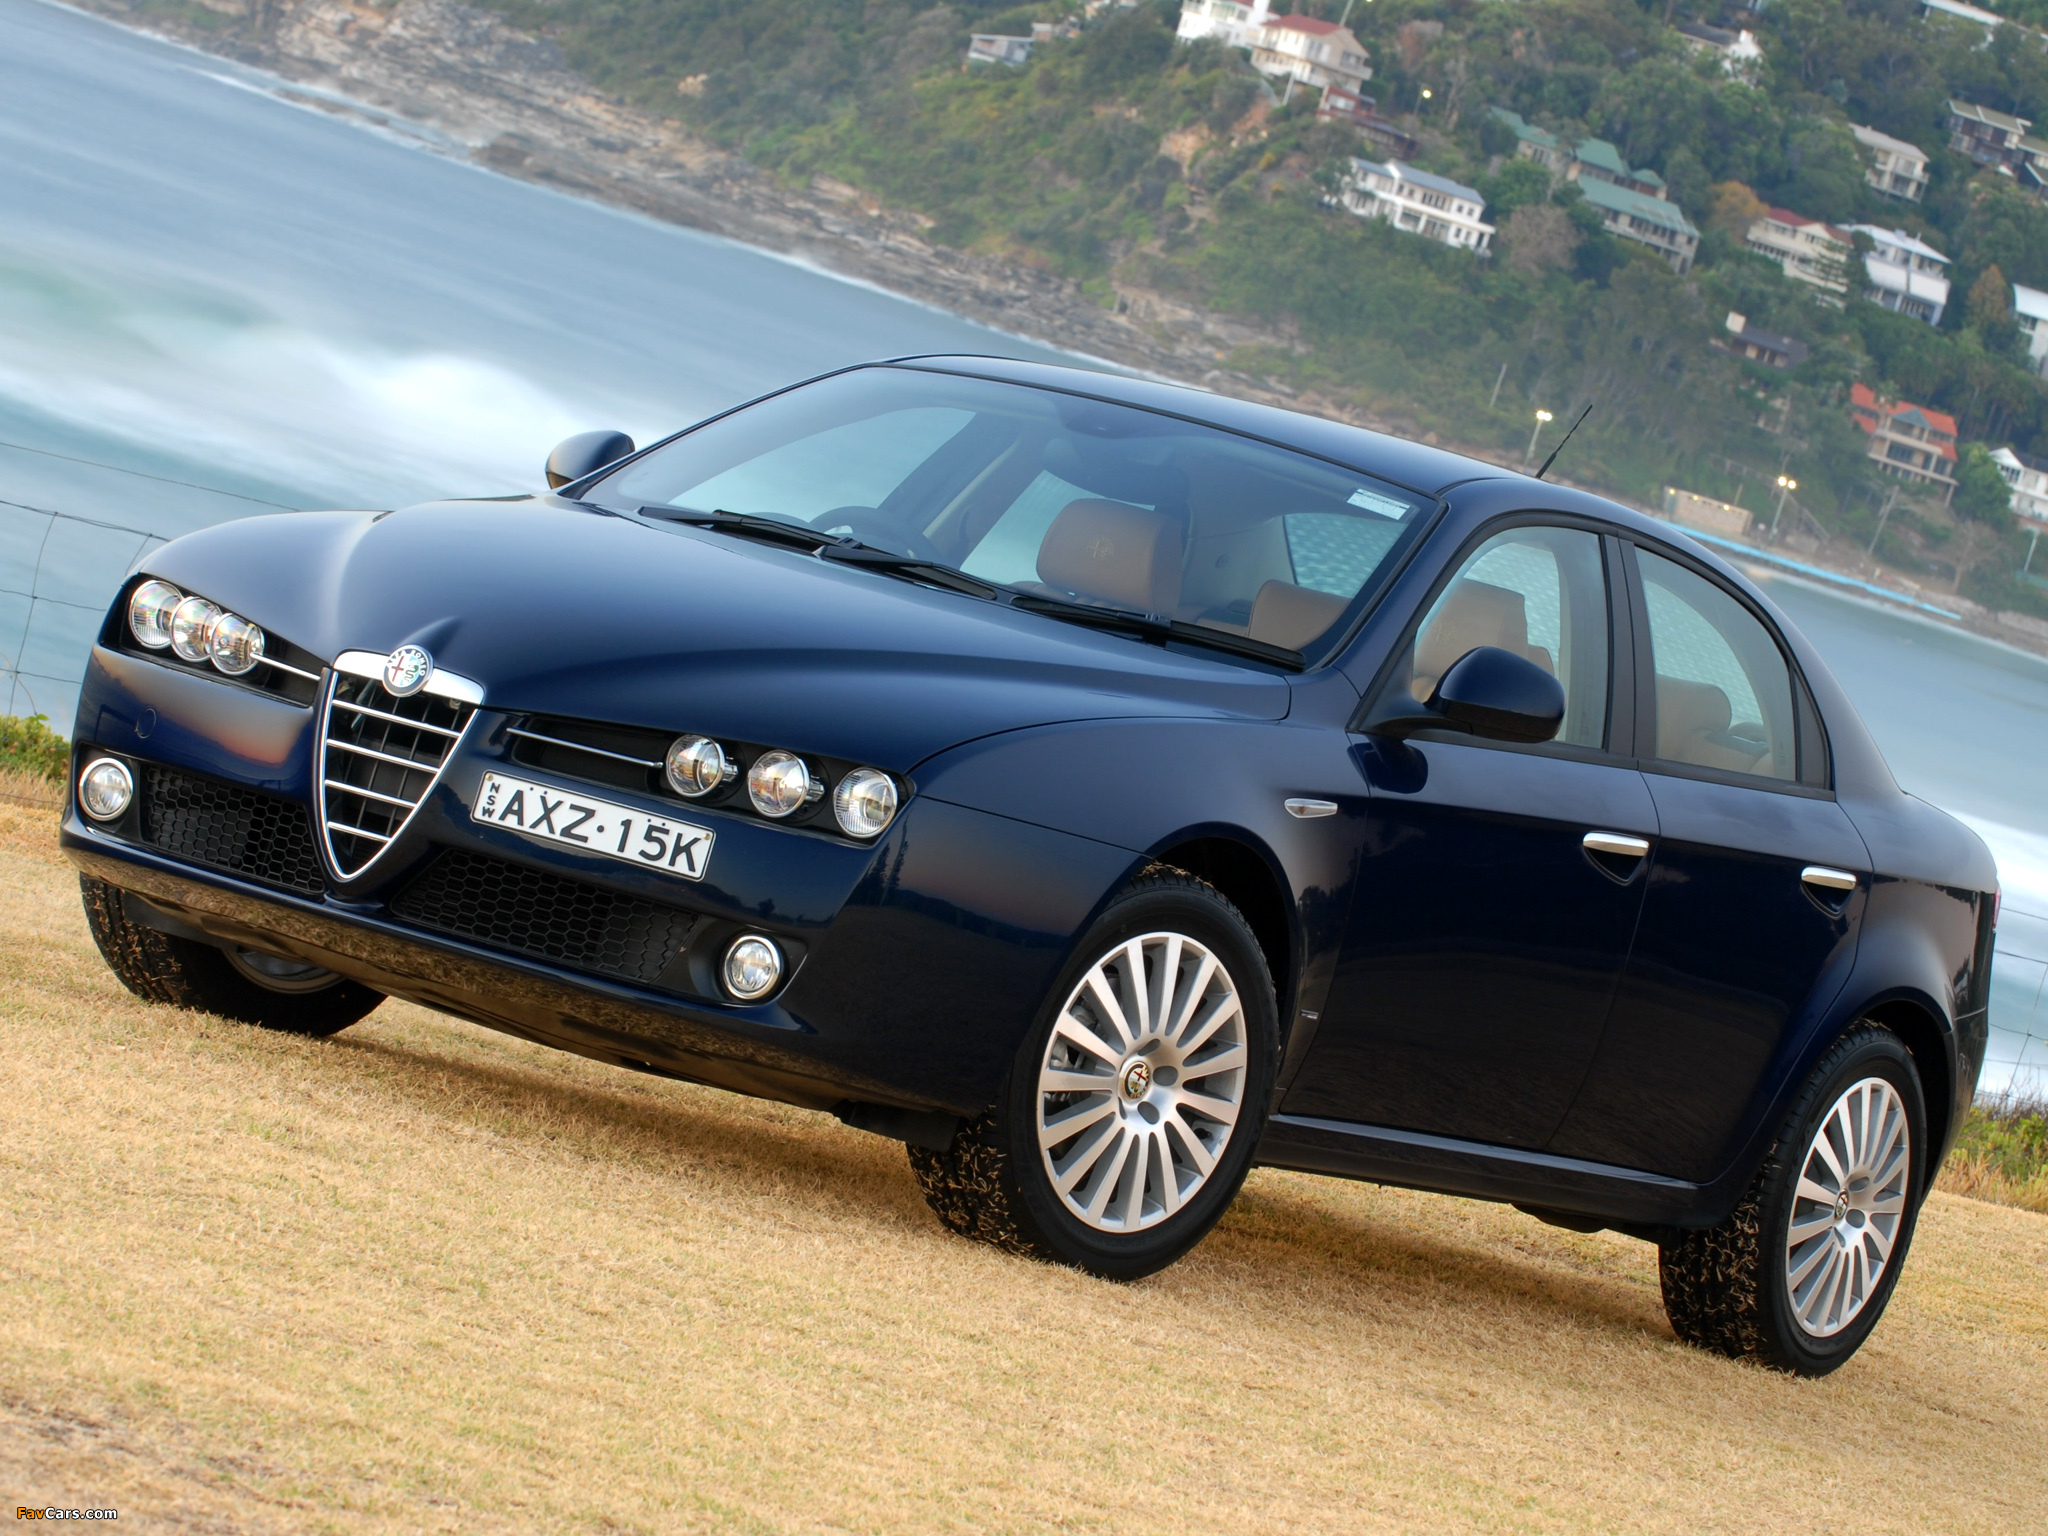 Альфа ромео кто производитель страна: Страна производитель марки Alfa Romeo (Альфа Ромео), какая?